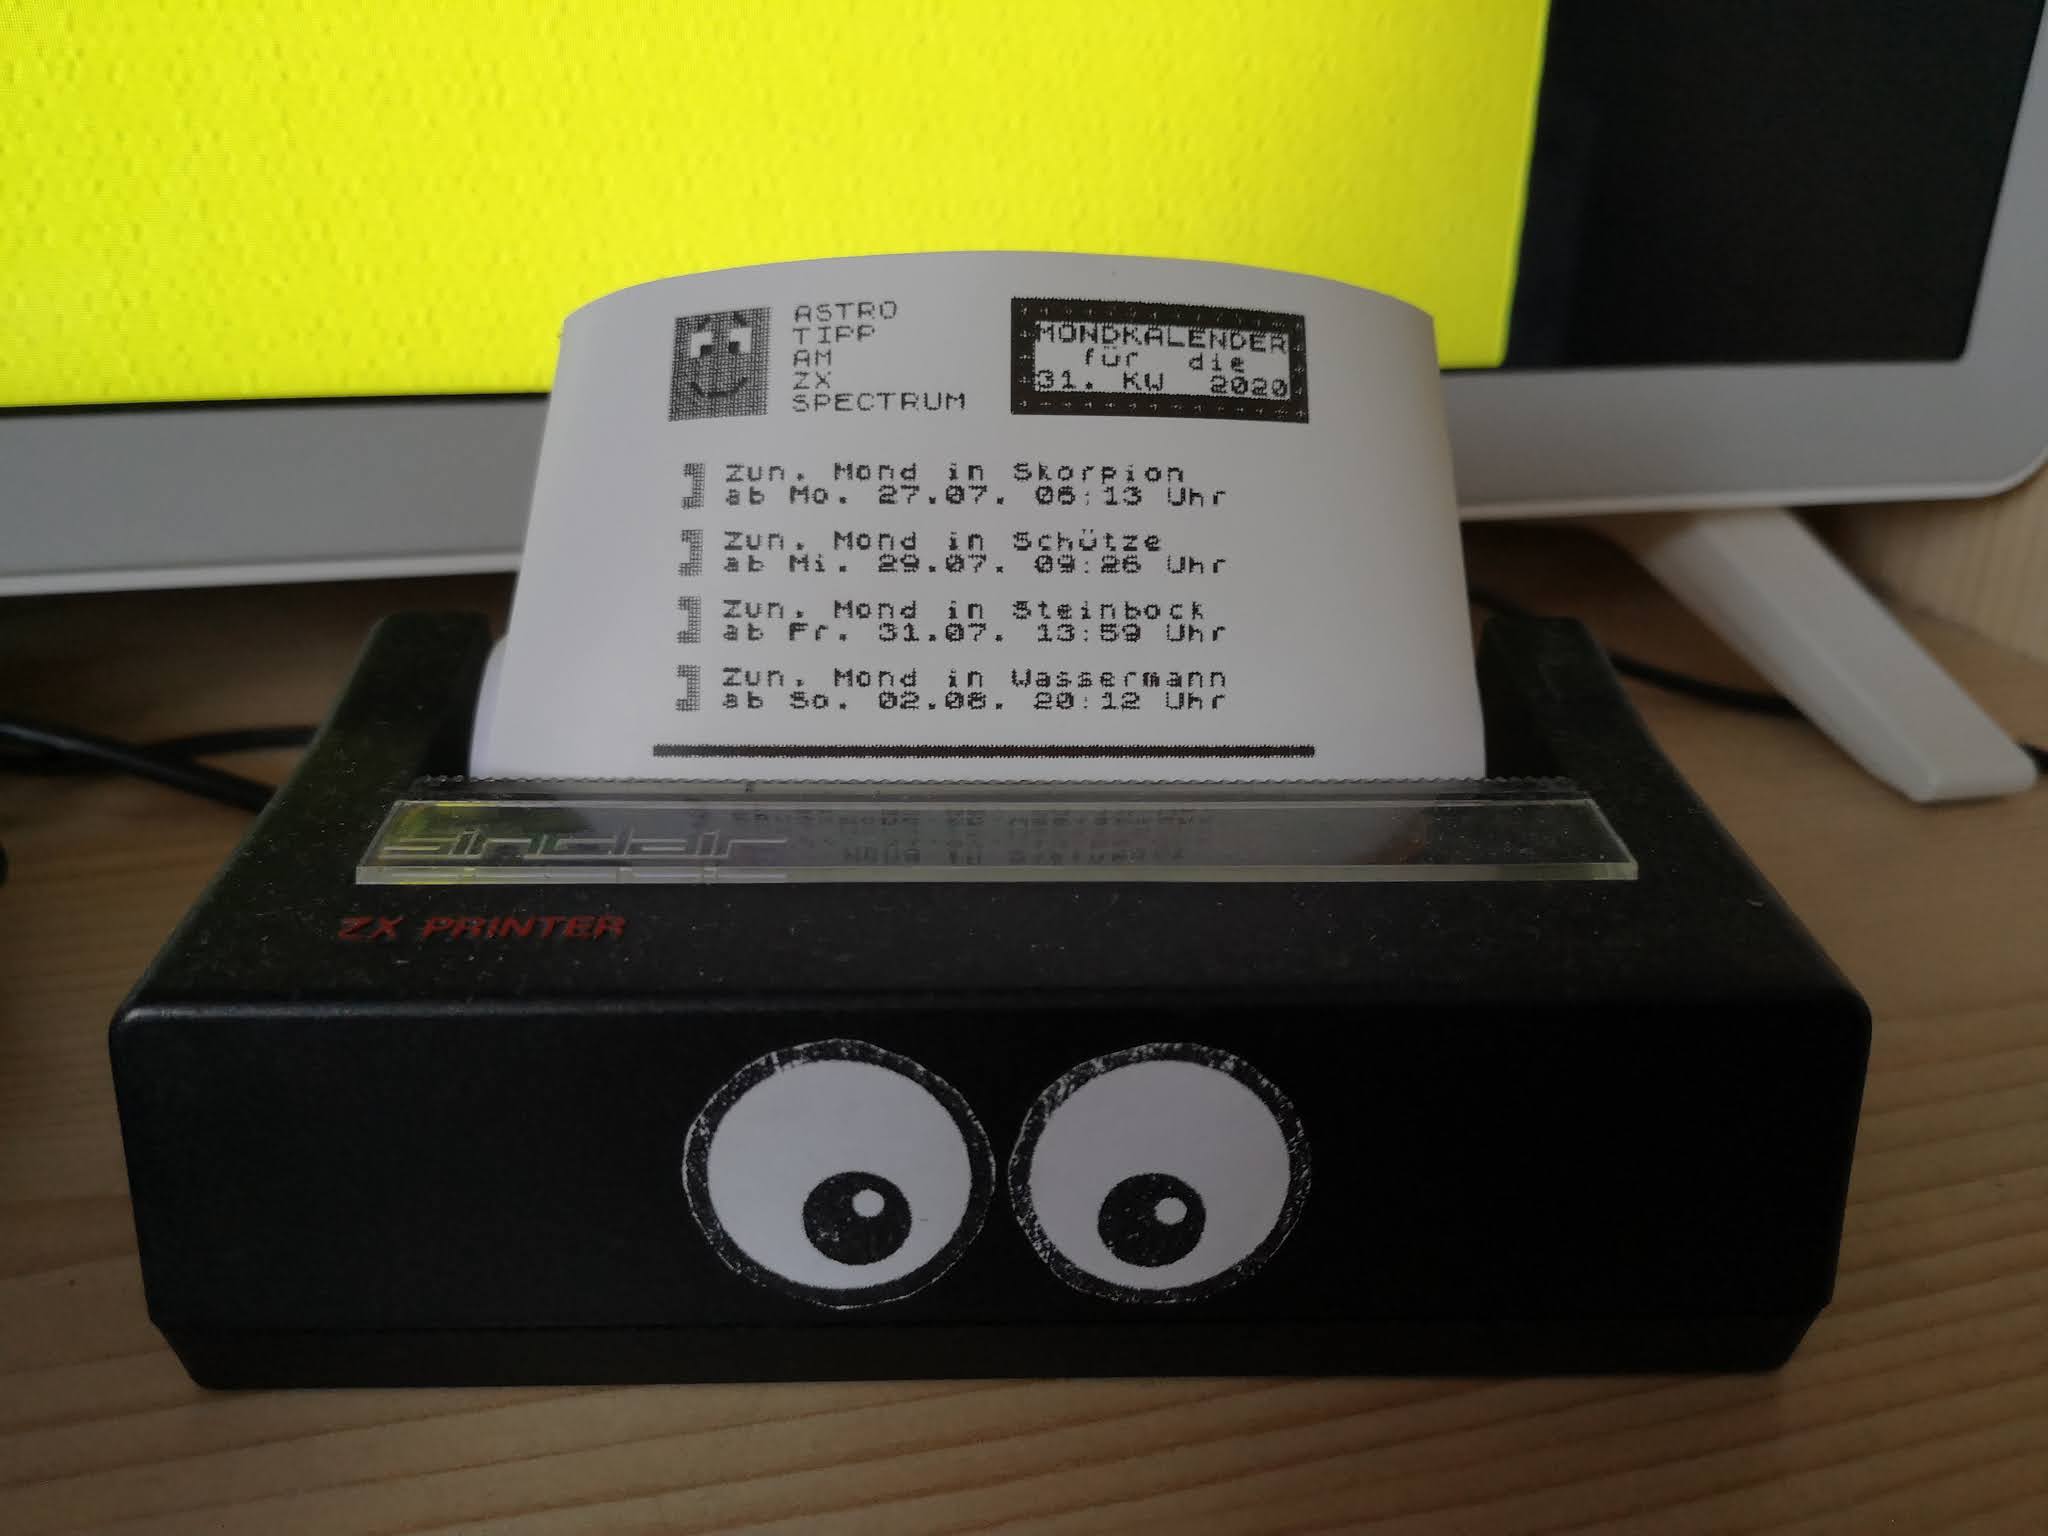 Mondkalender - Ausdruck am ZX Printer